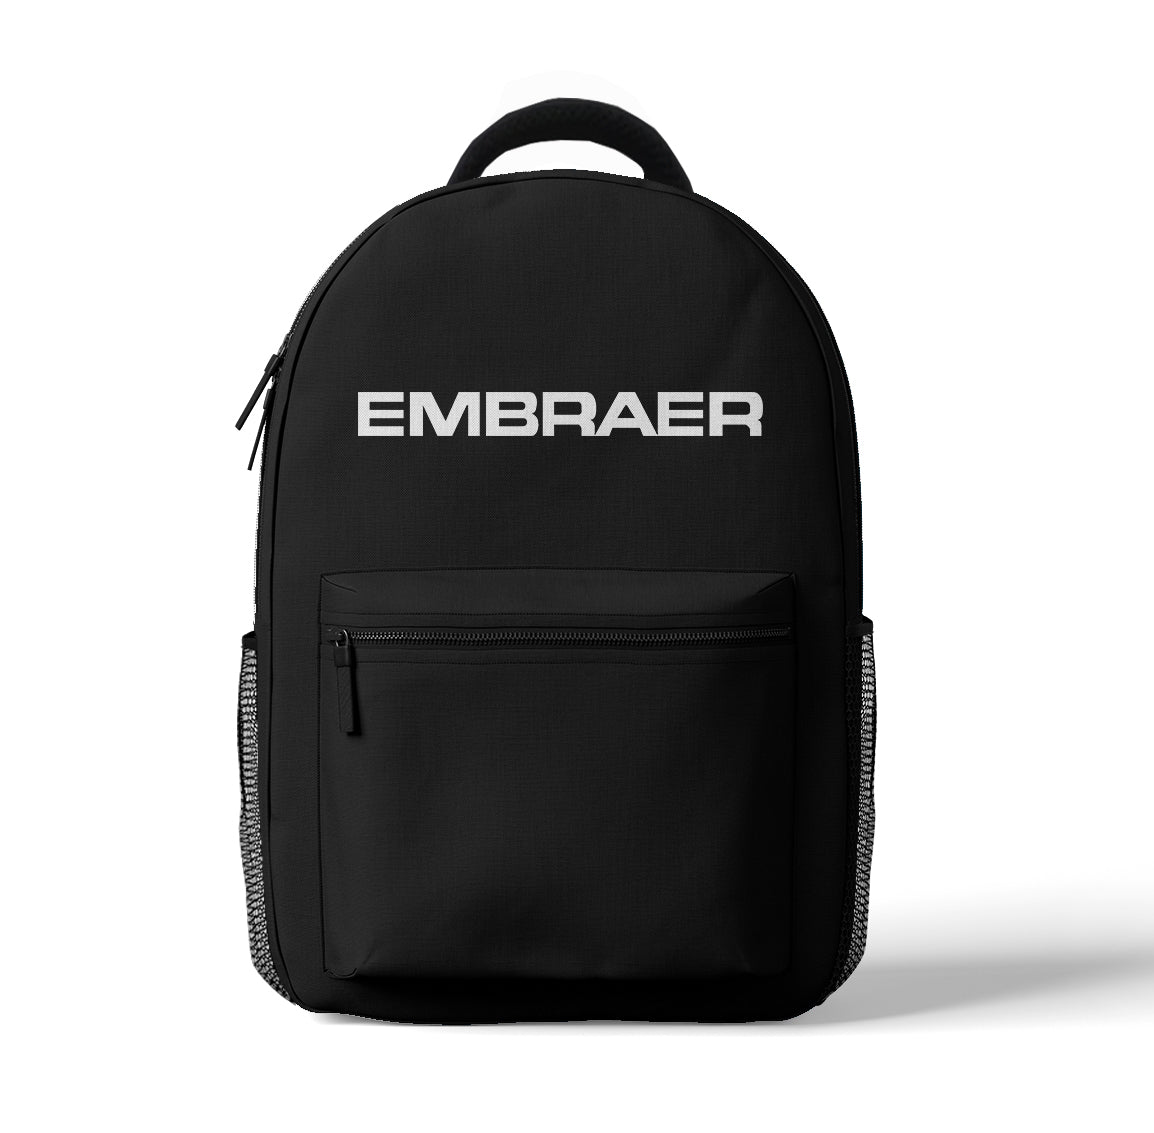 Embraer & Text Designed 3D Backpacks